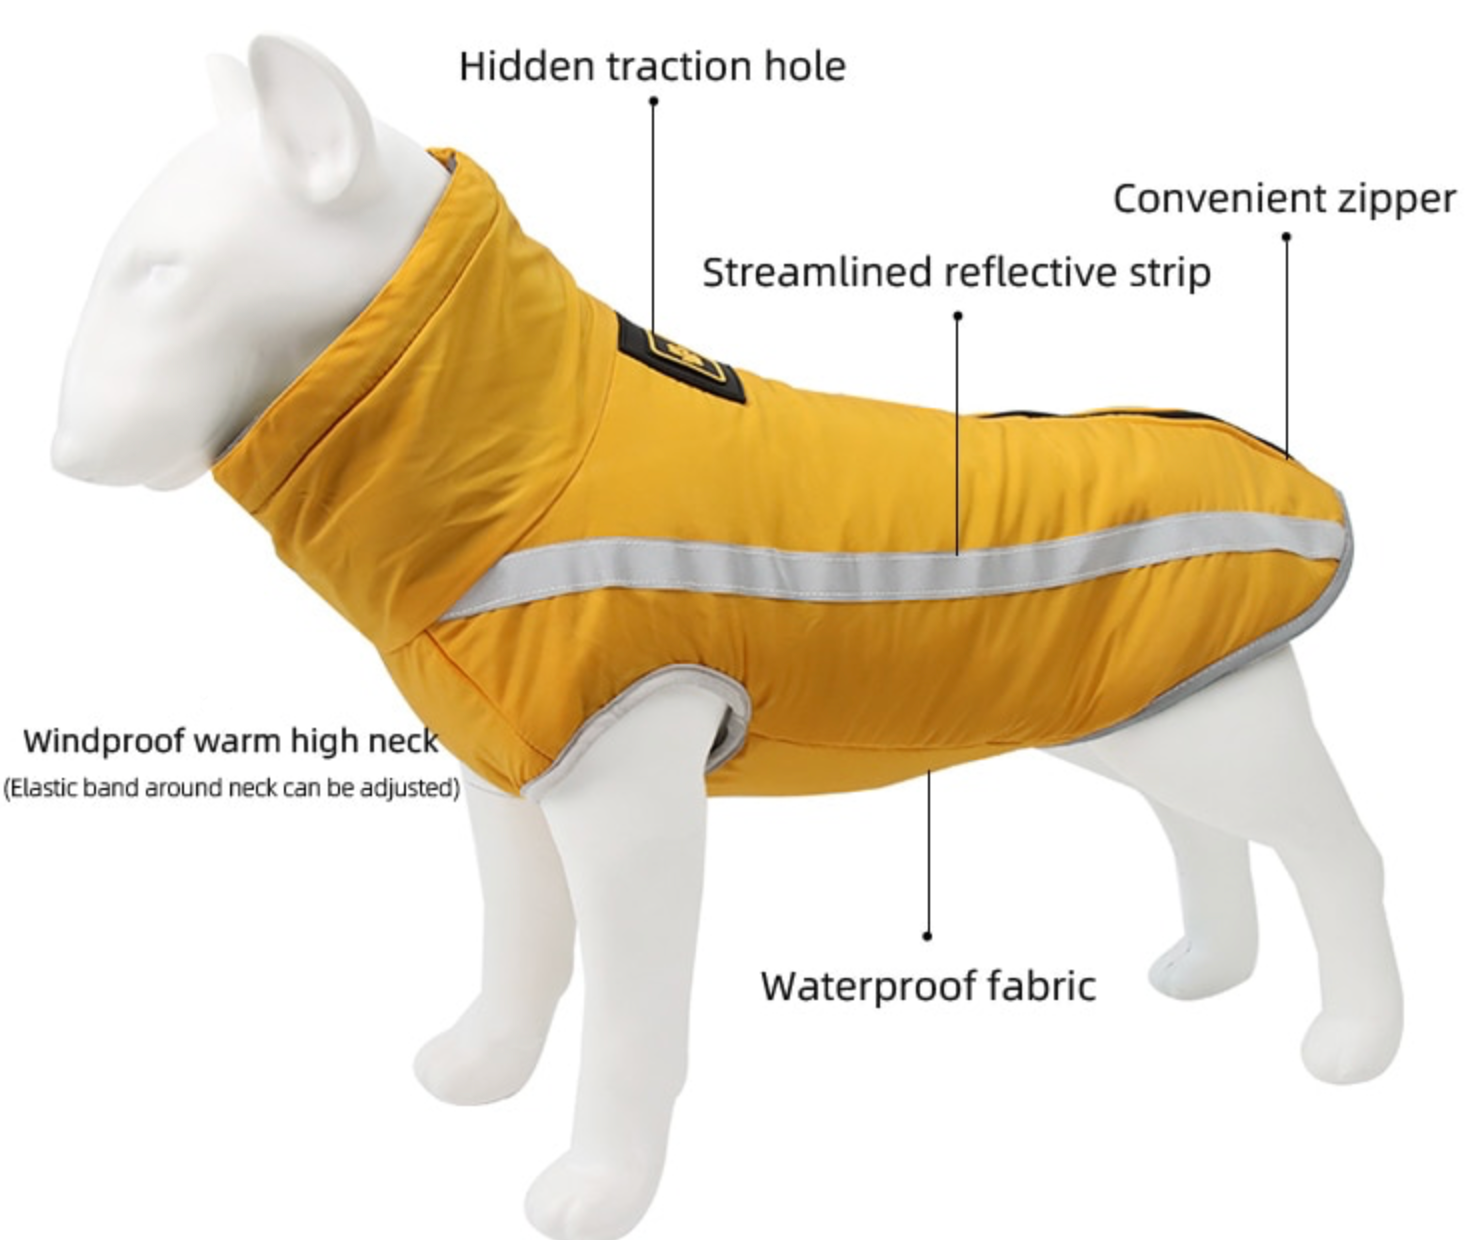 Waterproof Dog Vest/Jacket - Madison's Mutt Mall